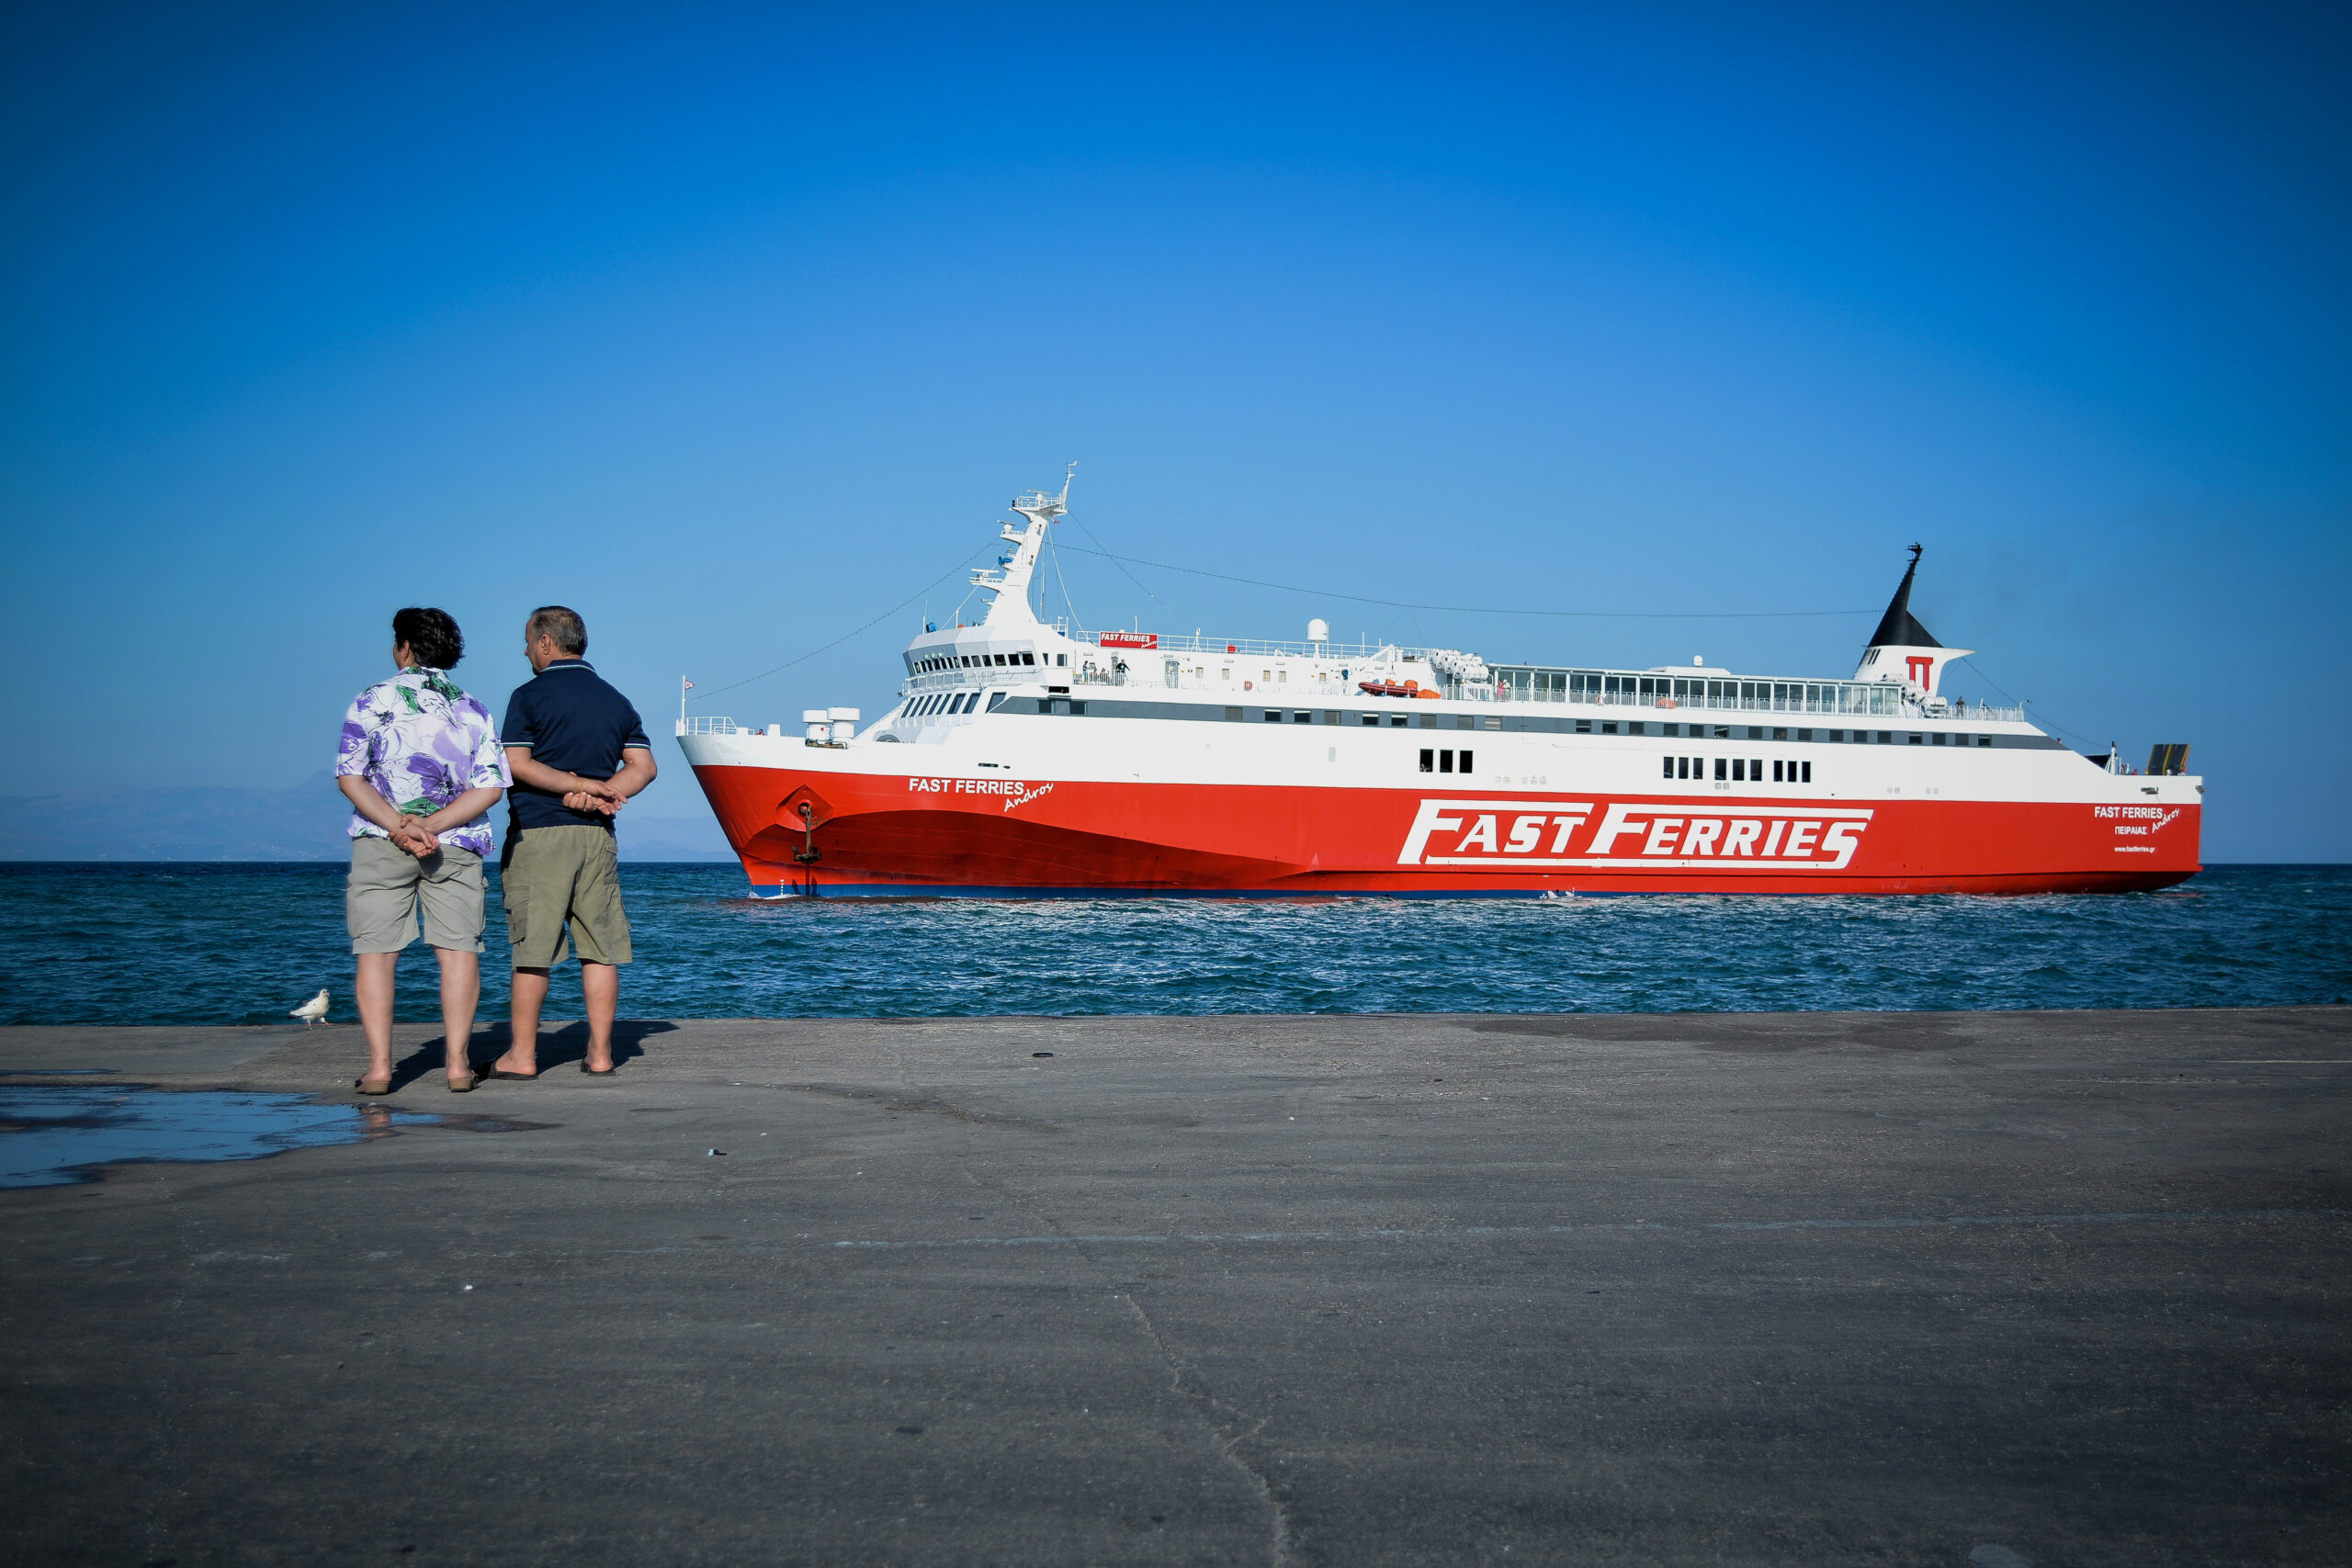 Μηχανική βλάβη στο Fast Ferries Andros – Το πλοίο κατέπλευσε στη Μύκονο